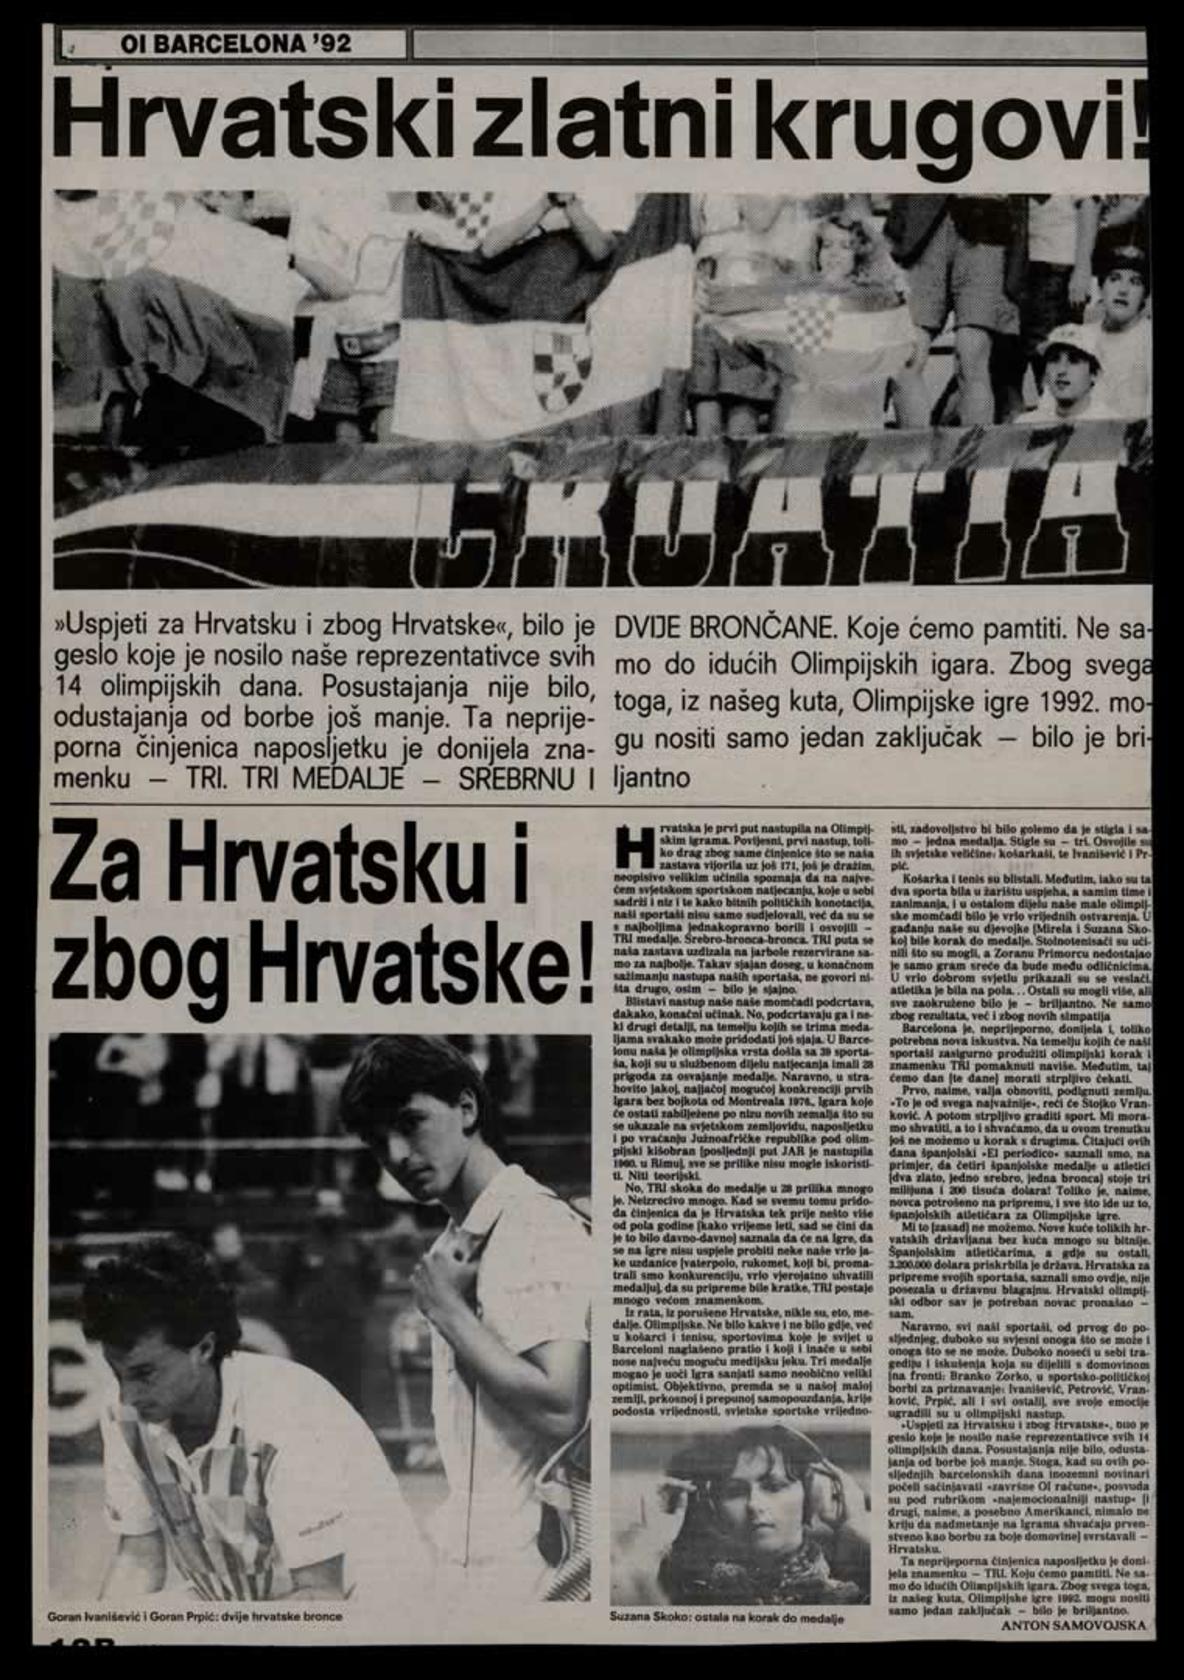 <b>Uspjeti za Hrvatsku i zbog Hrvatske</b>, članak iz <i>Novog vjesnika</i>, 10. kolovoza 1992.<br><br>
HR-HDA-2031. Vjesnik. Sport, kut. 3169
